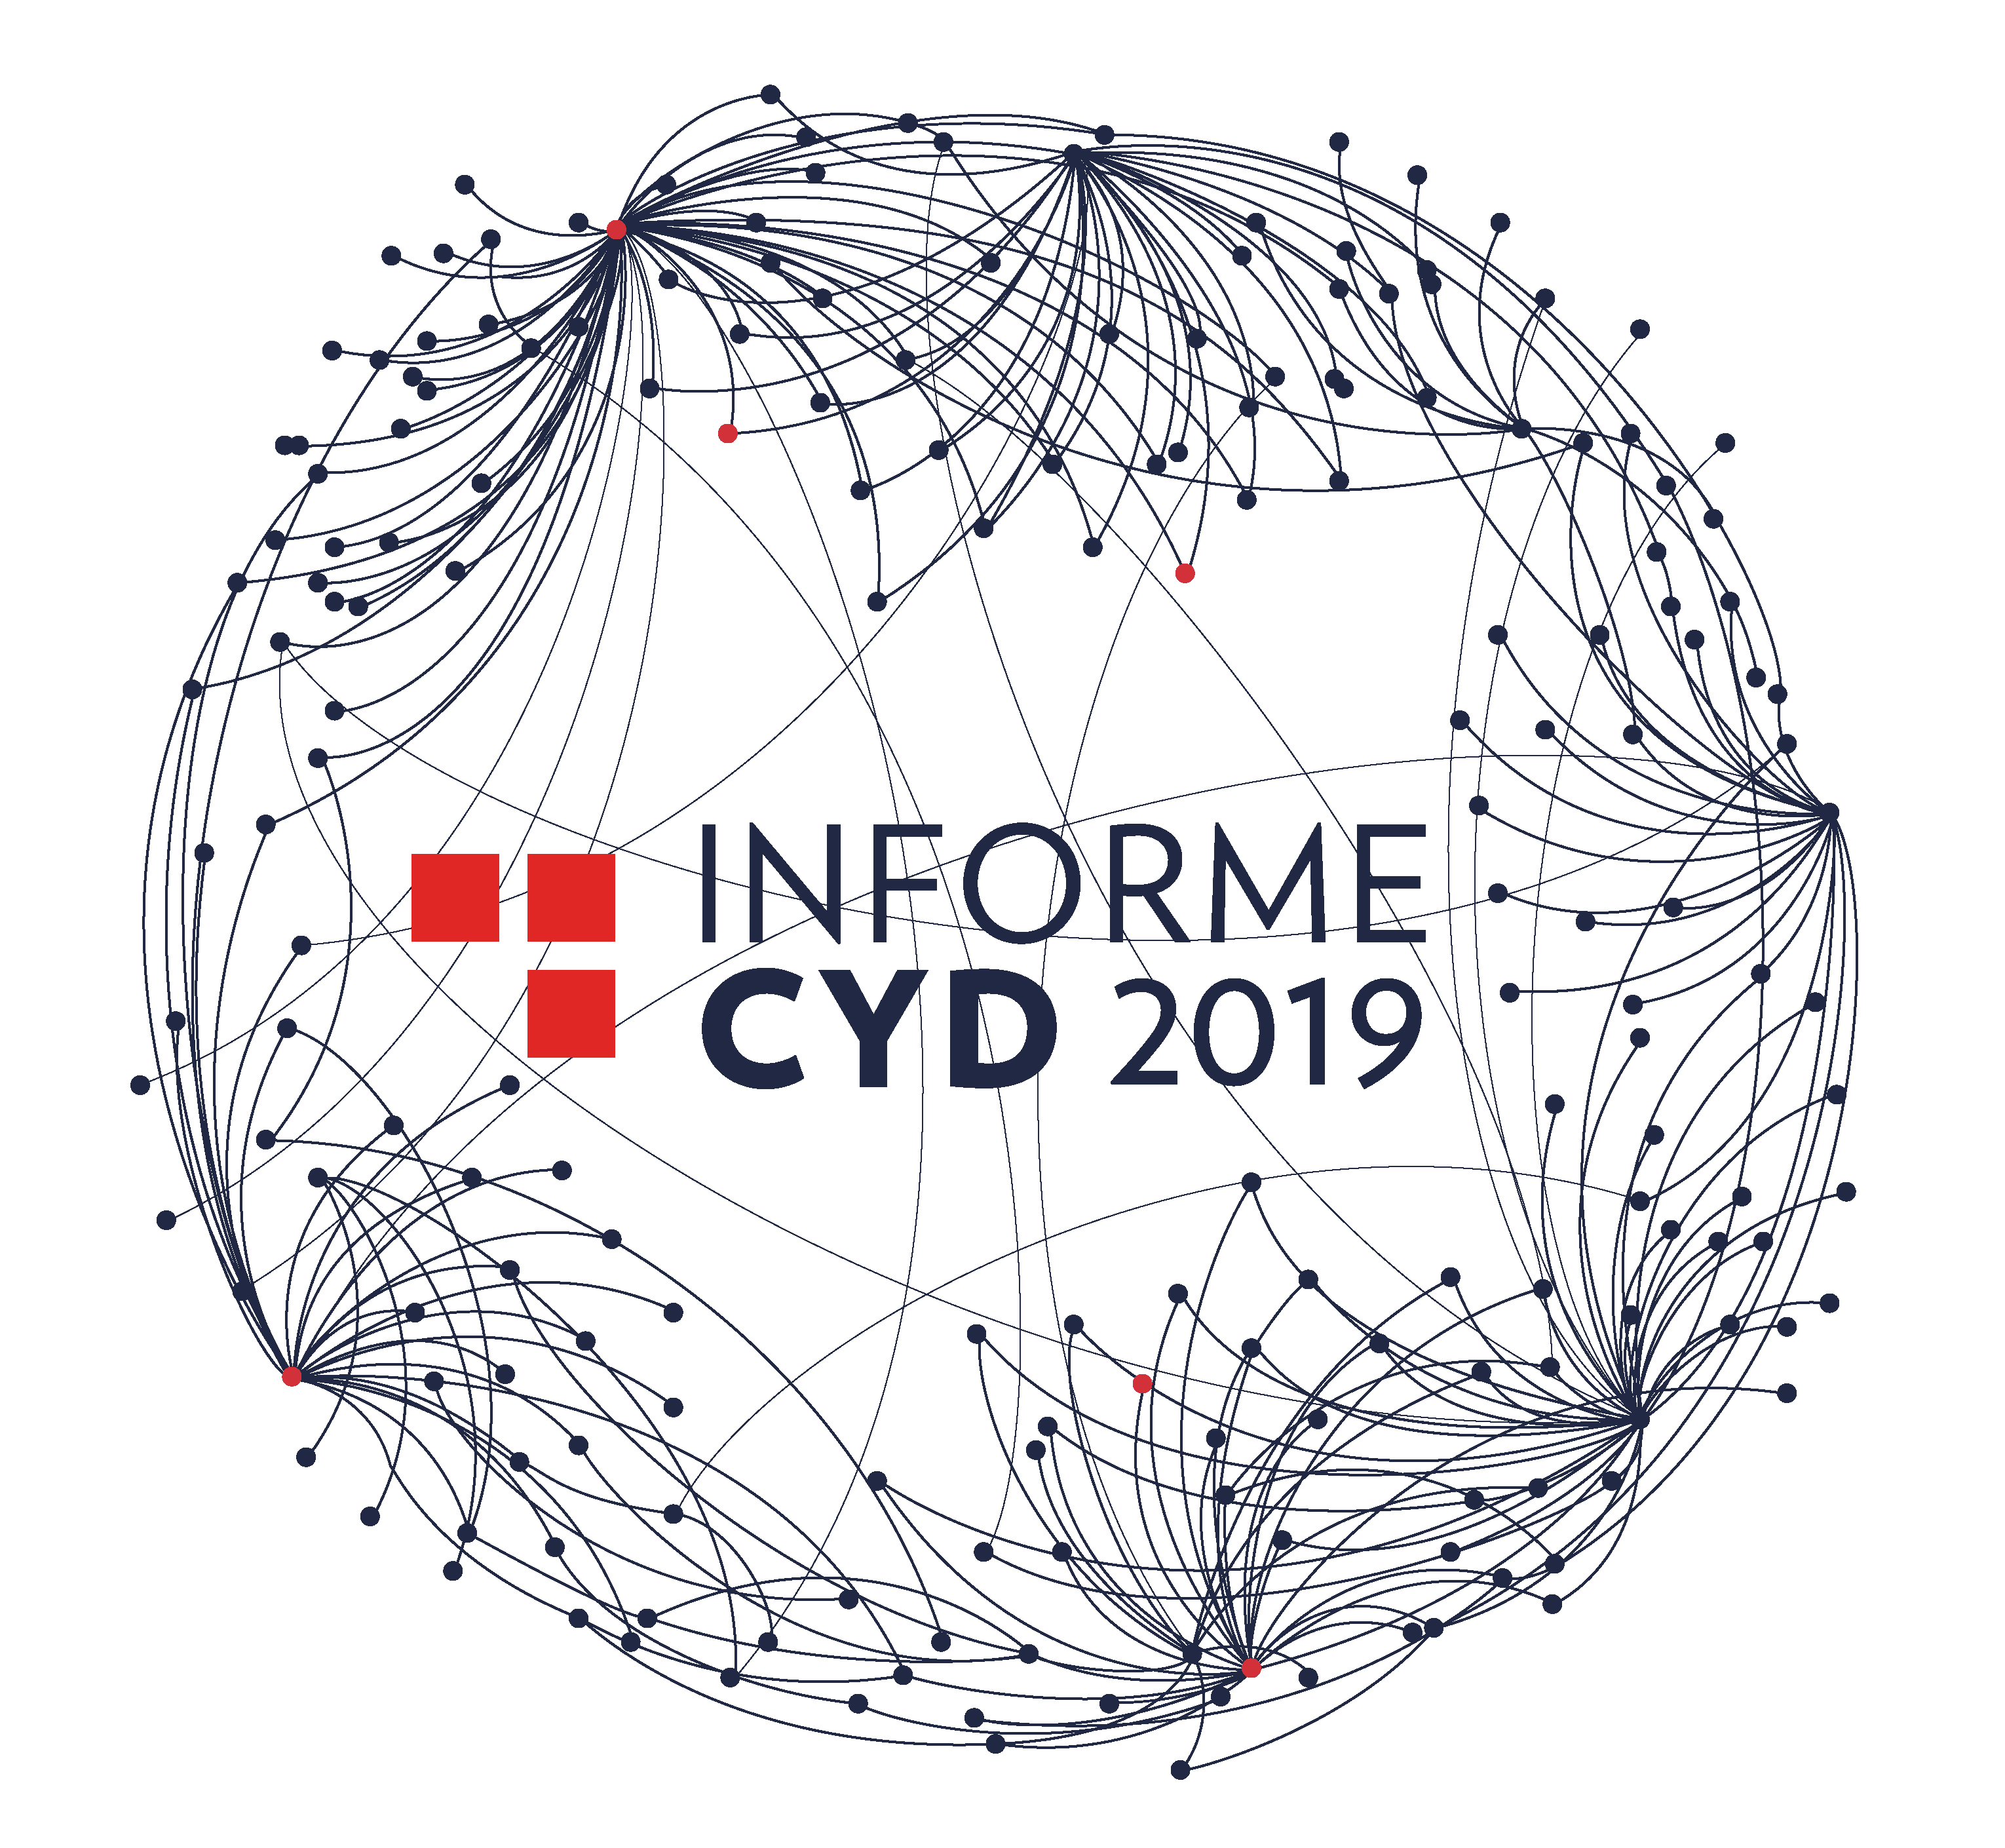 Informe CYD 2019